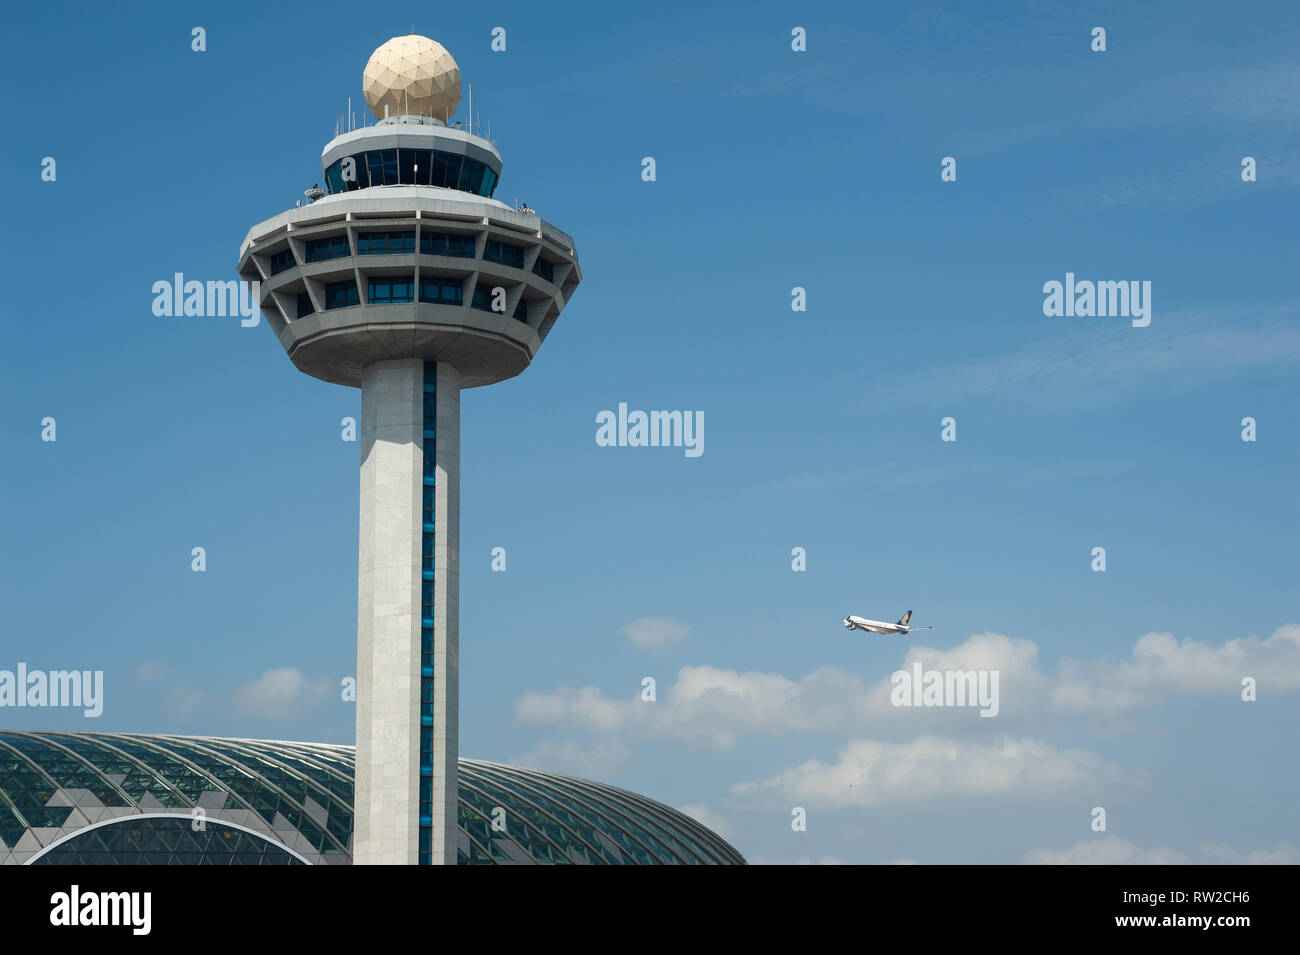 01.03.2019, Singapur, República de Singapur, Asia - la torre de control del tráfico aéreo y la nueva joya de la terminal en el aeropuerto de Changi de Singapur. Foto de stock